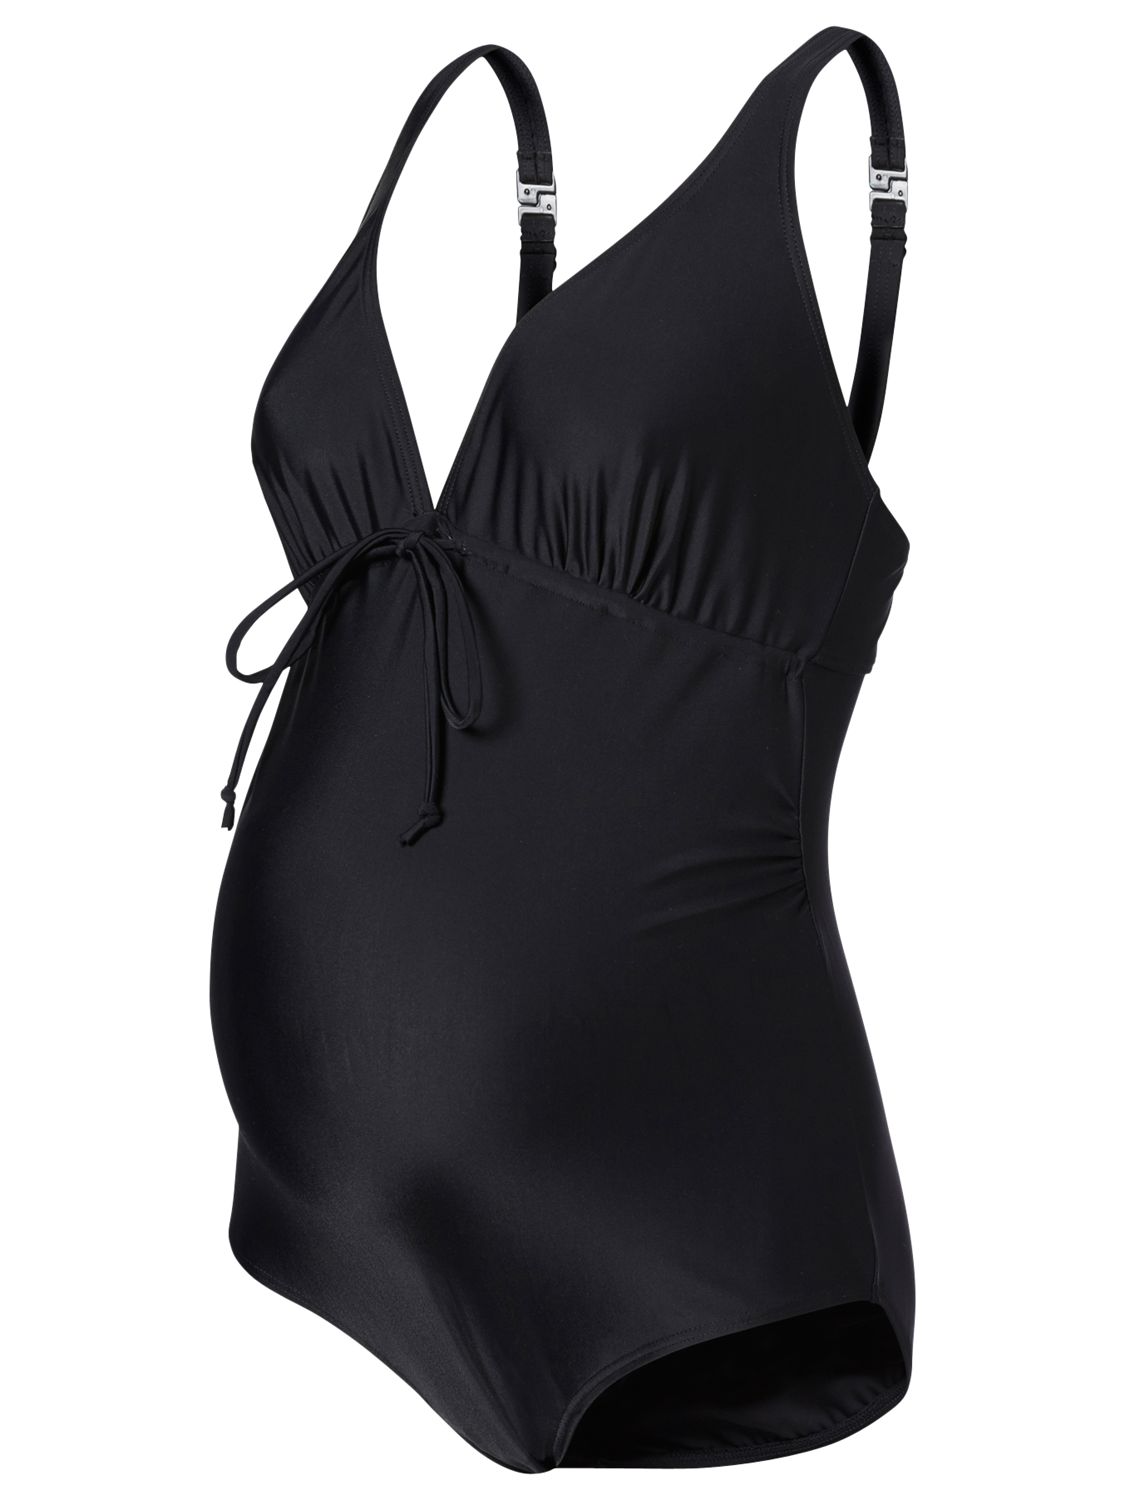 Mamalicious New Josephine Maternity Swimsuit, Black at John Lewis ...